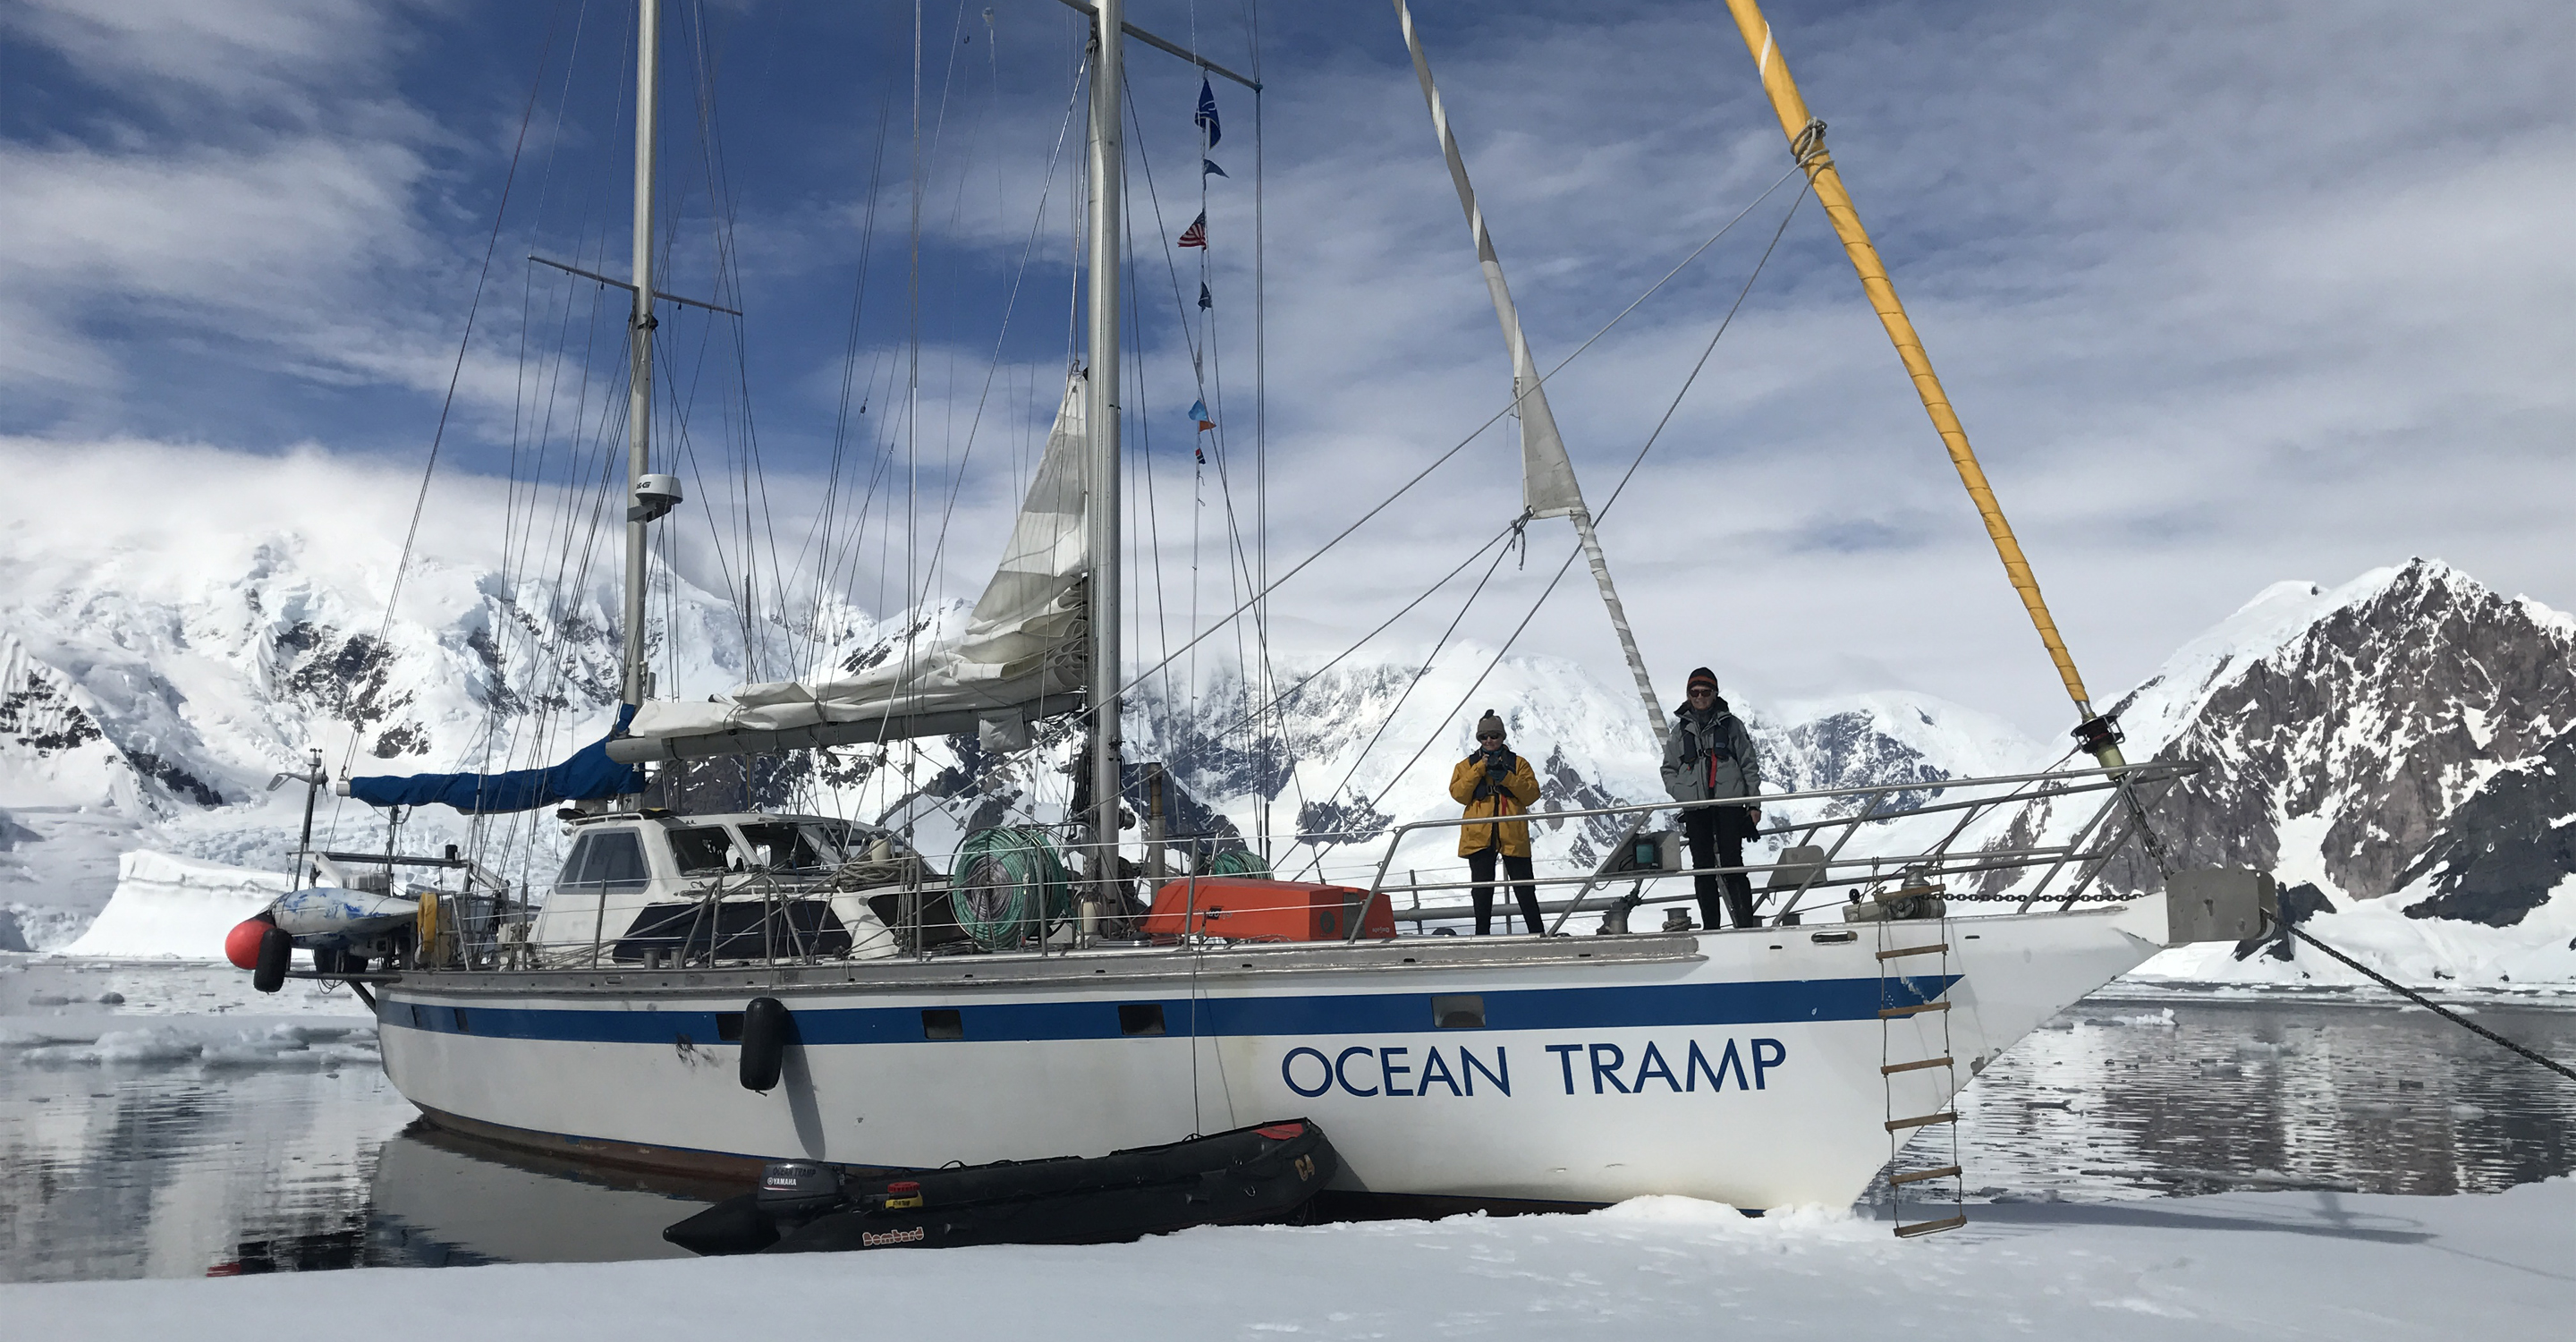 The Ocean Tramp ship anchored off the shoreline of Antarctica